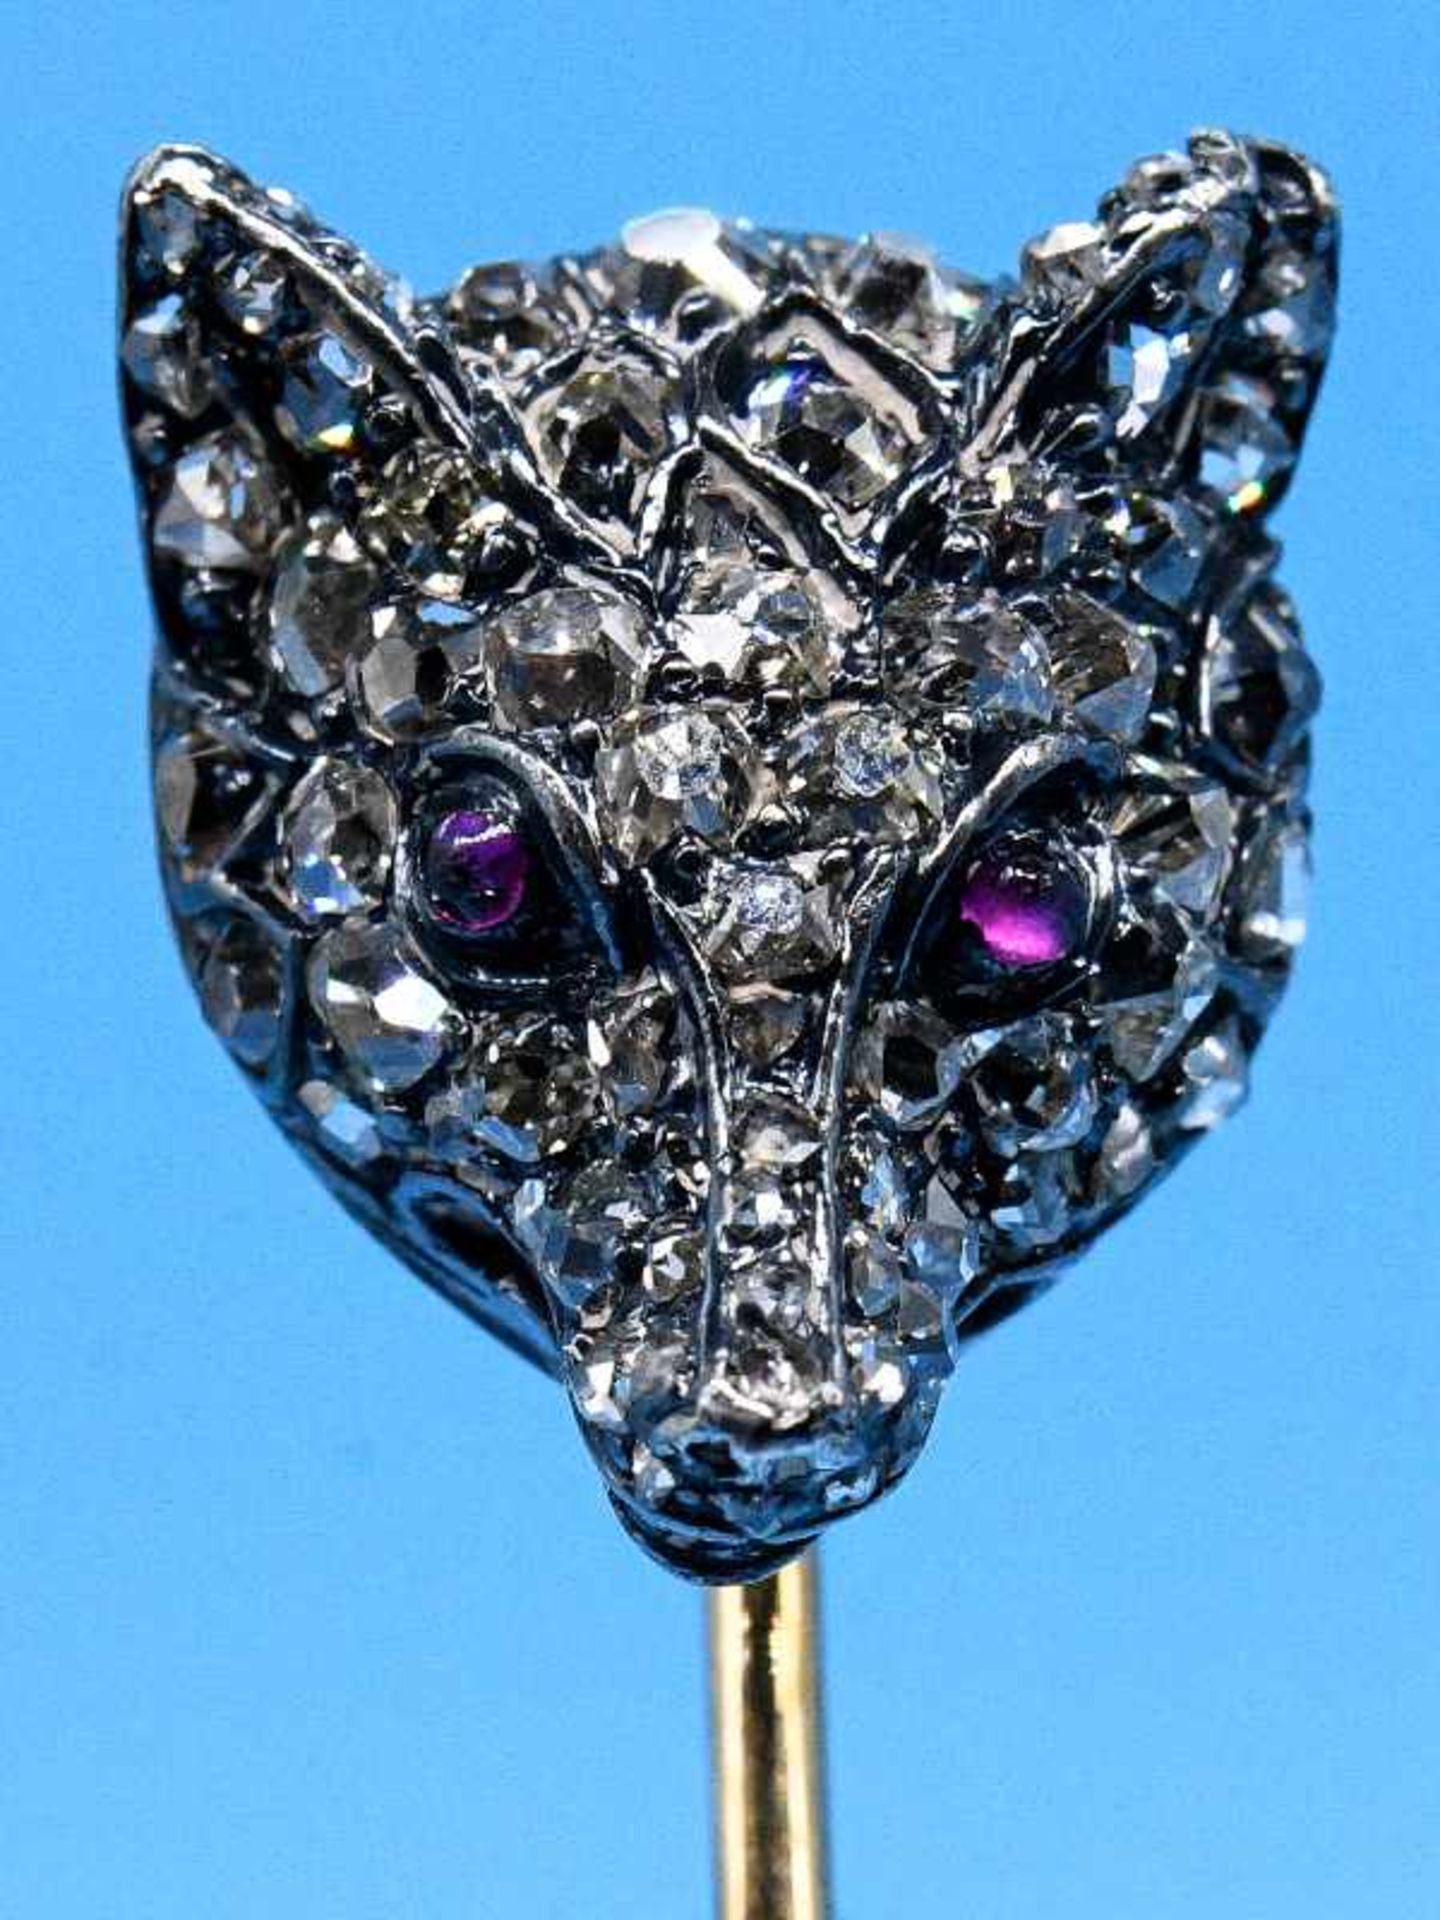 Krawattennadel mit halbplastischem, diamantbesetztem Fuchskopf, zusammen ca. 0,35 ct, um 1900. 585/-